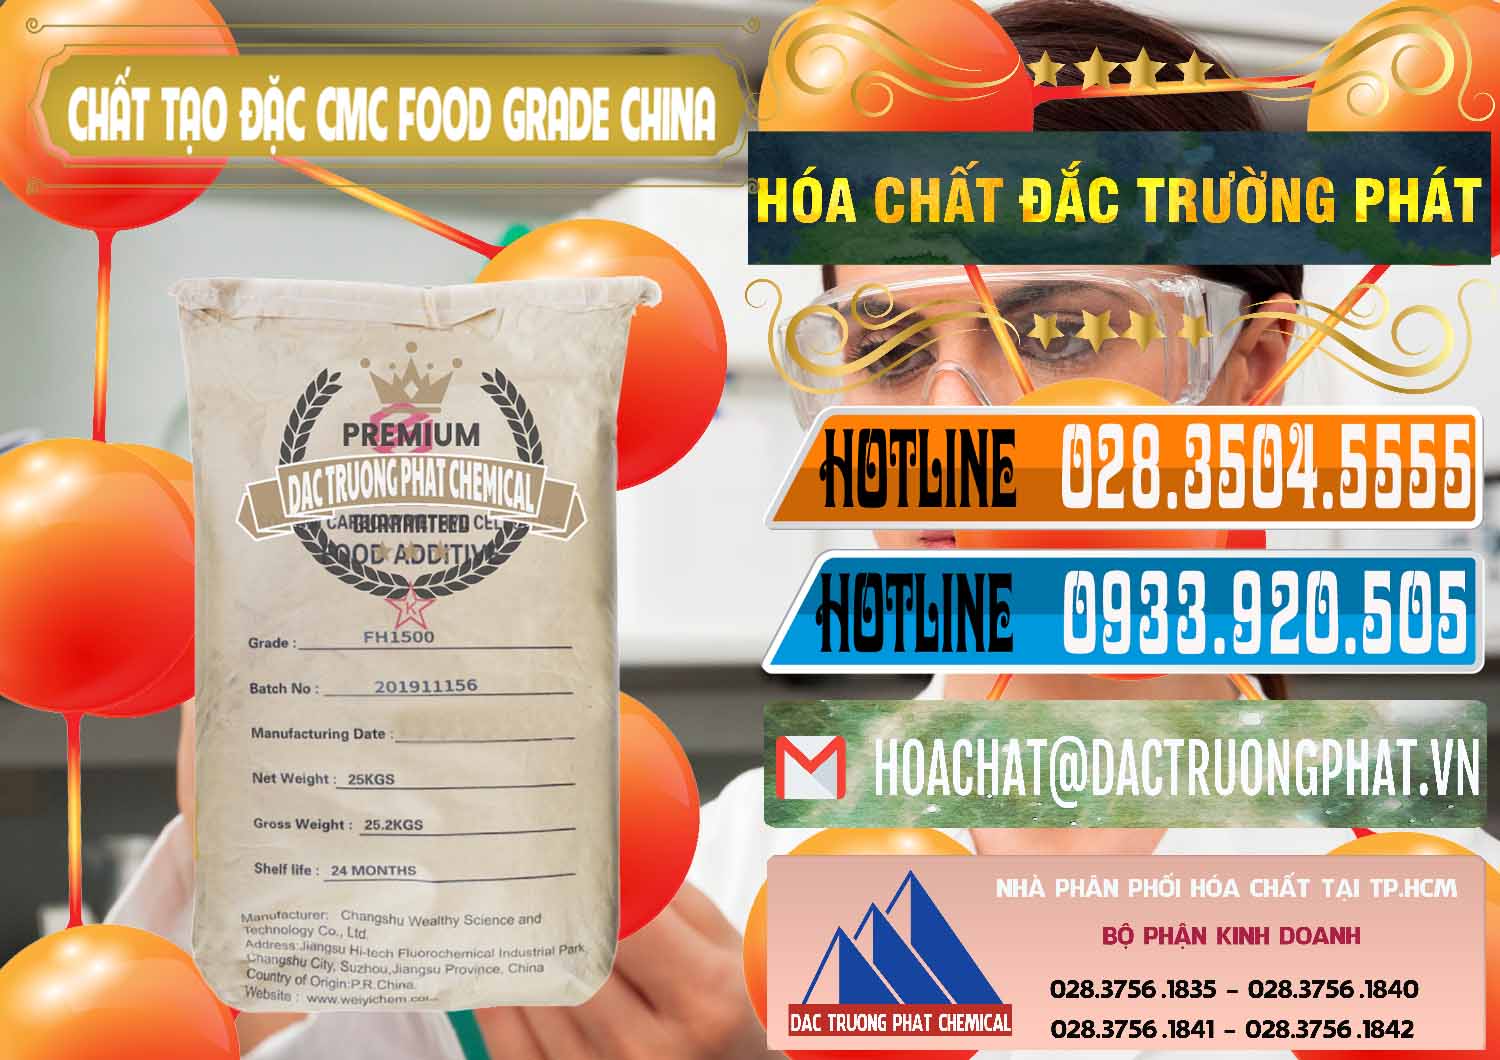 Nơi chuyên bán ( cung ứng ) Chất Tạo Đặc CMC Wealthy Food Grade Trung Quốc China - 0426 - Kinh doanh - cung cấp hóa chất tại TP.HCM - stmp.net